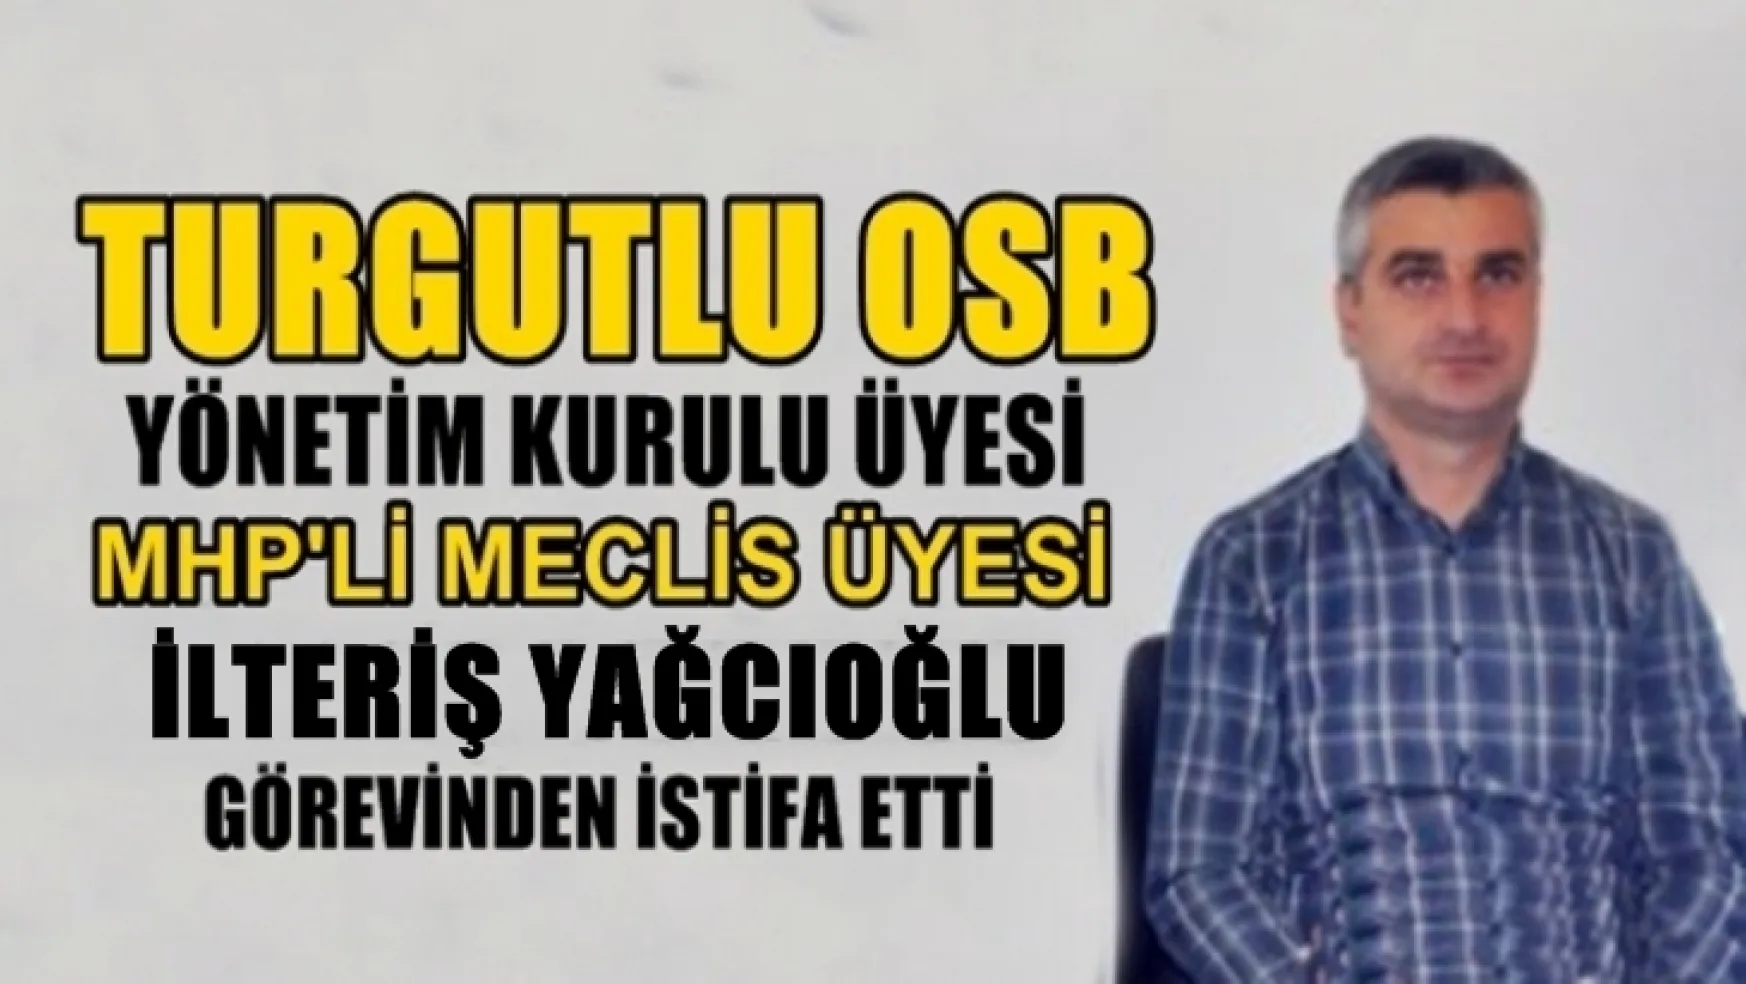 Turgutlu OSB'de Sular Durulmuyor!...